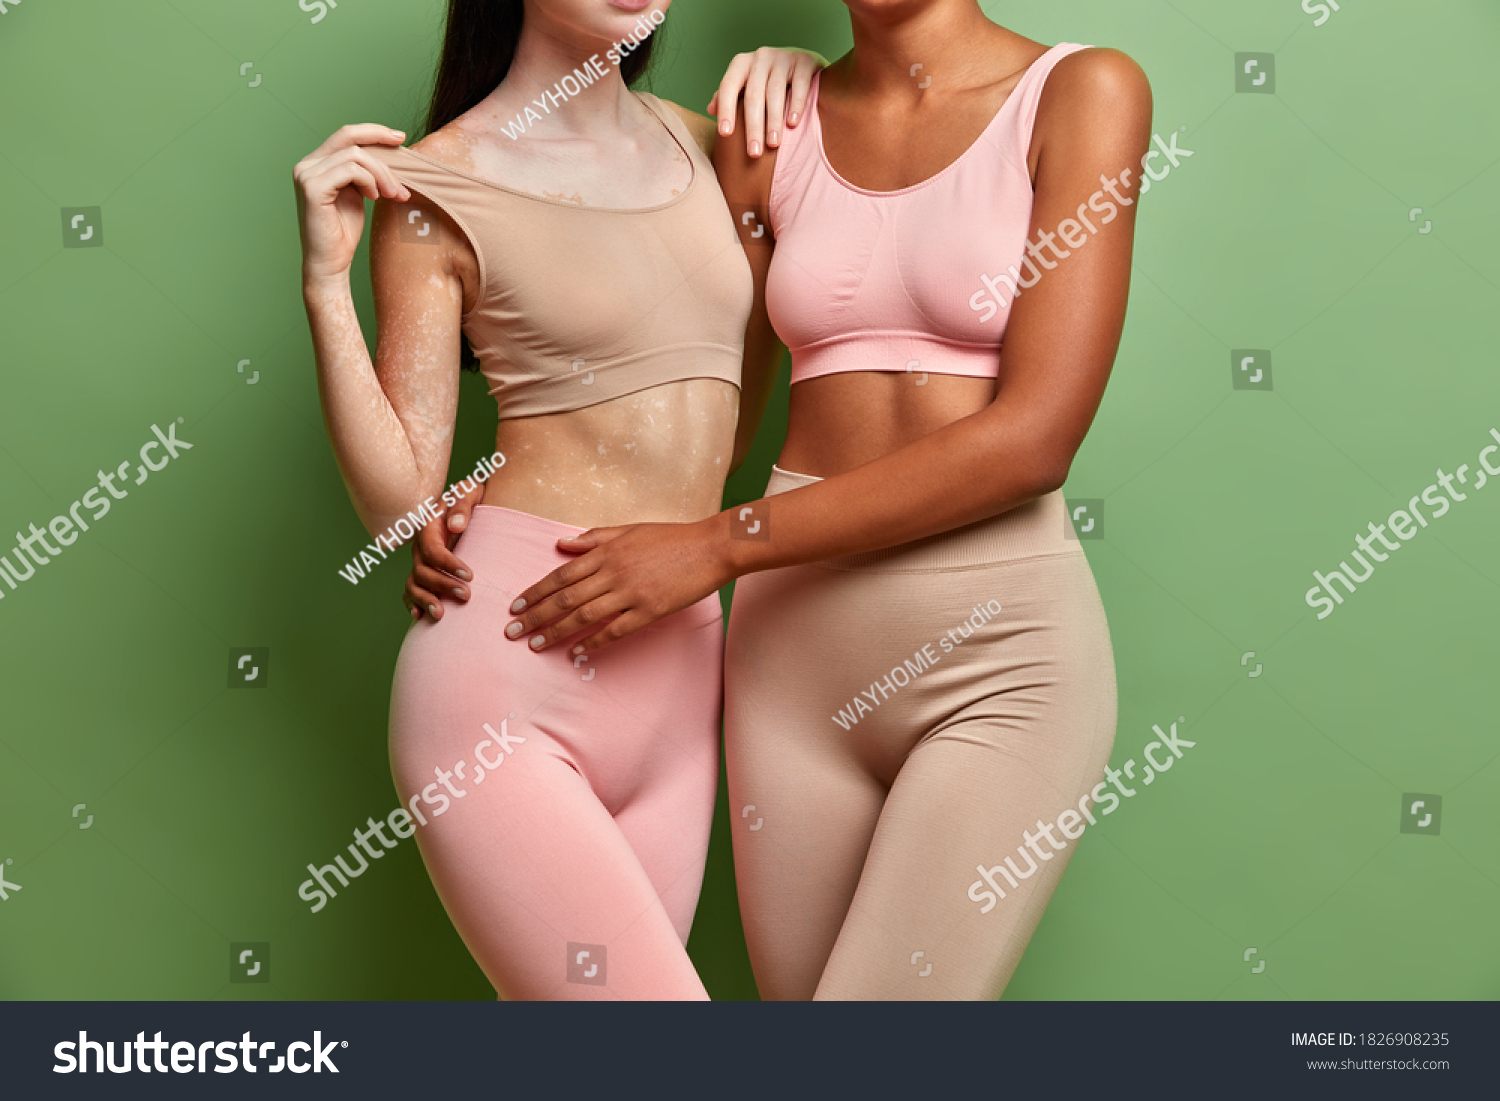 Interracial Lesbians